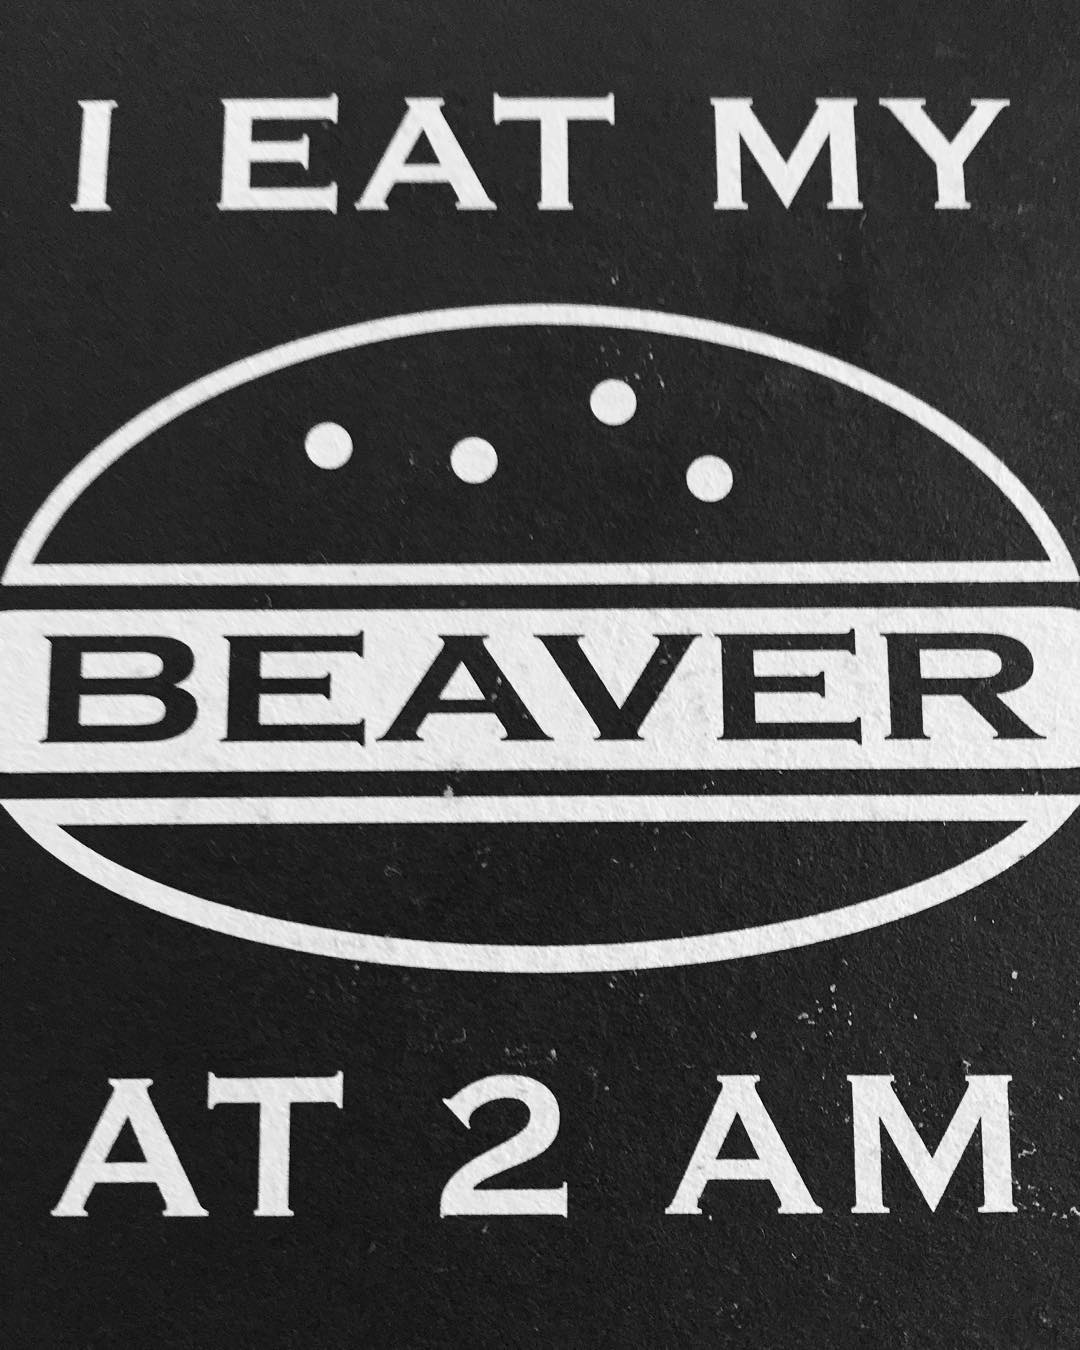 When do you eat your beaver?